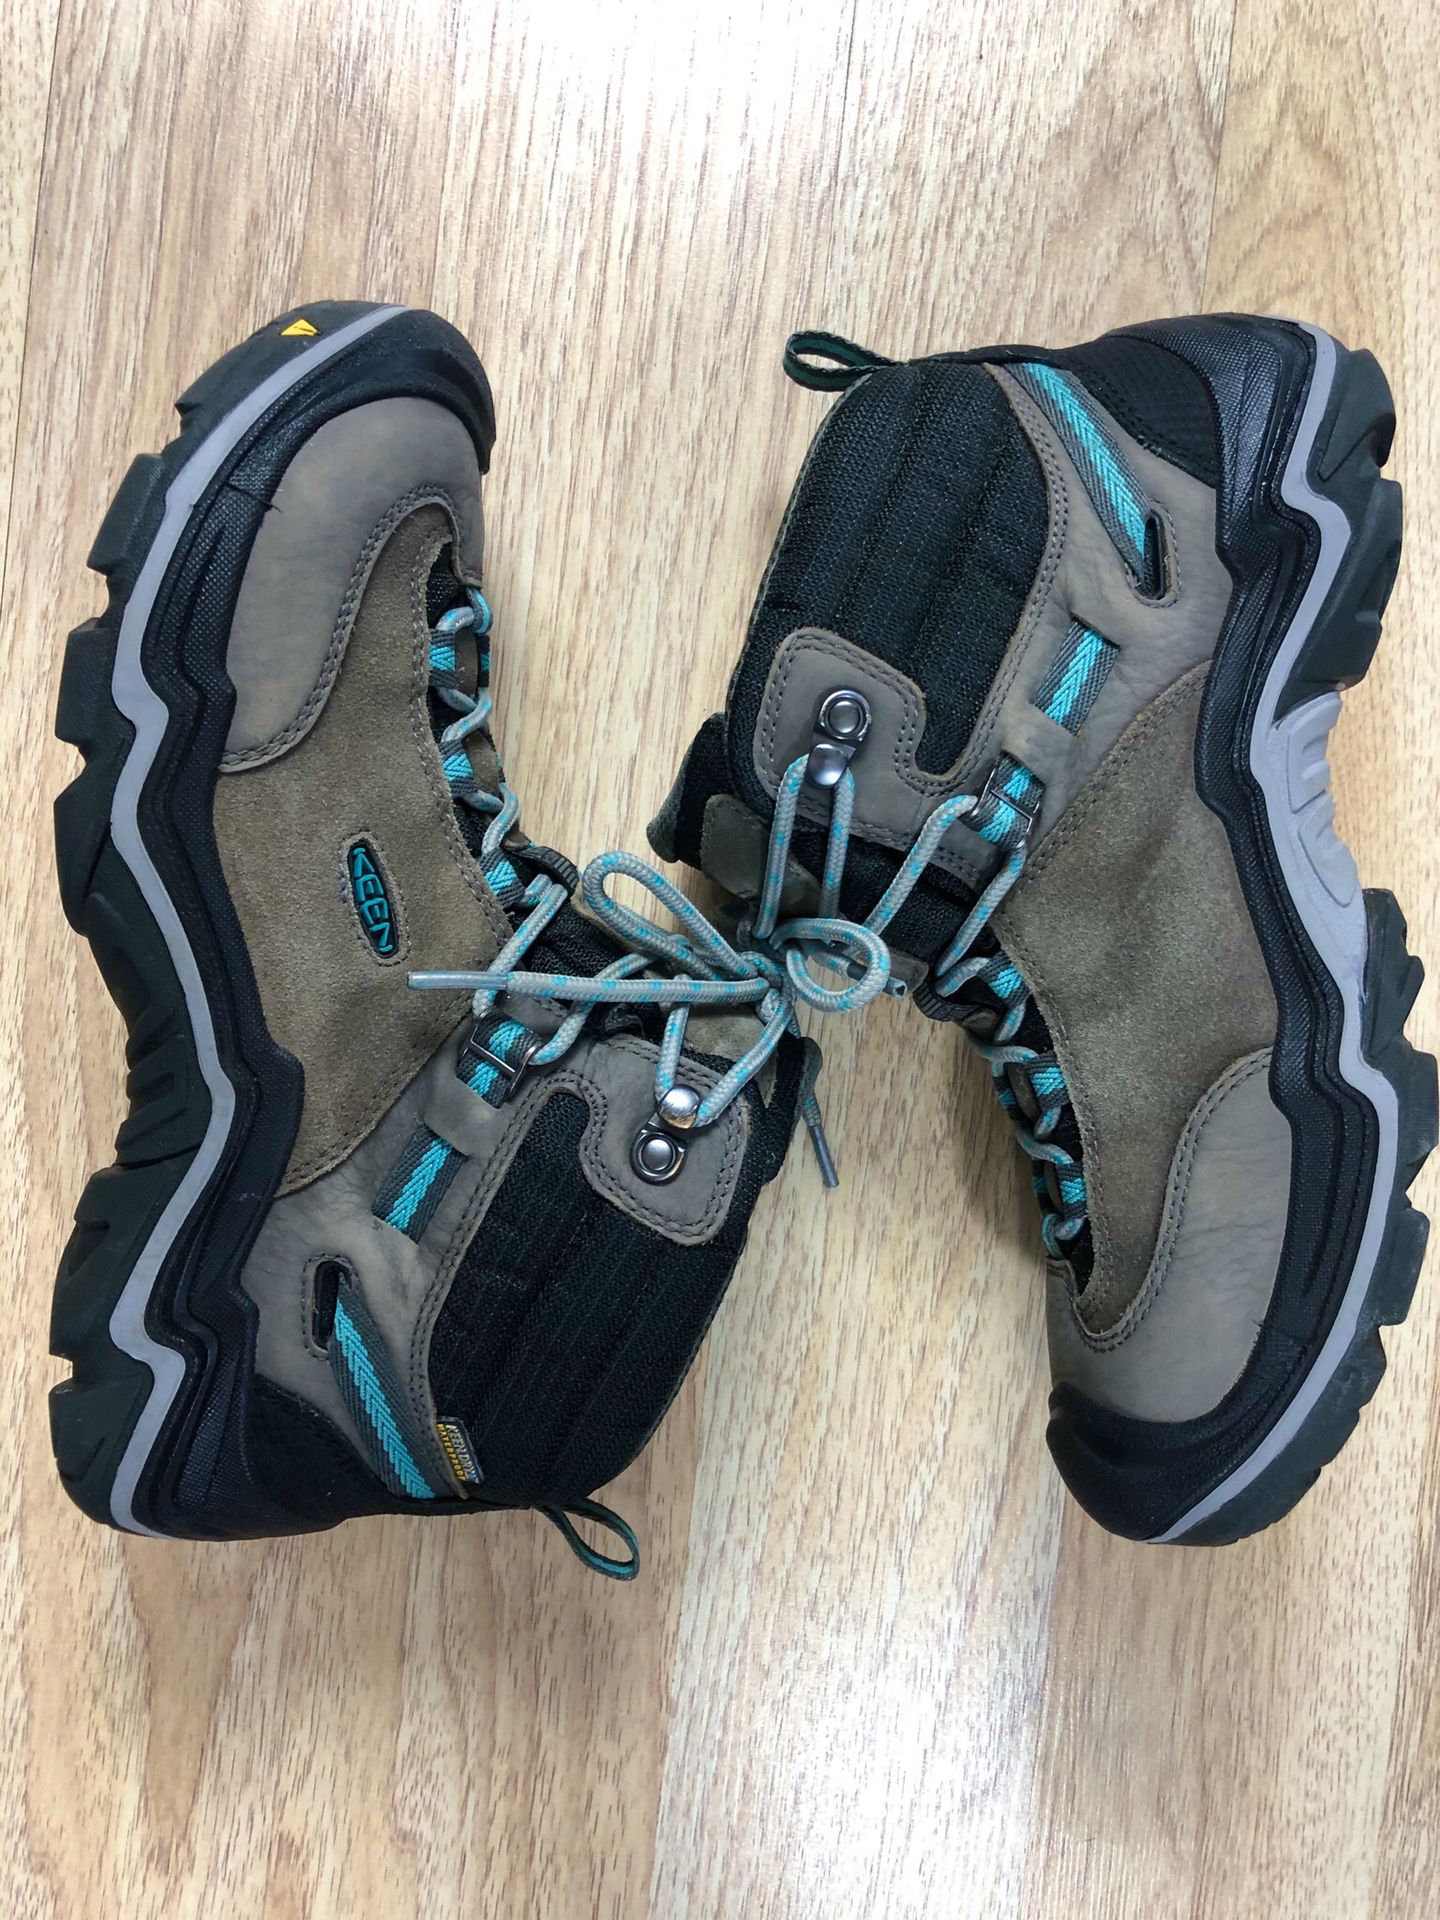 Keen Laurel Waterproof Mid Womens 10 Suede Trail Hiking Boots Steel Grey $180